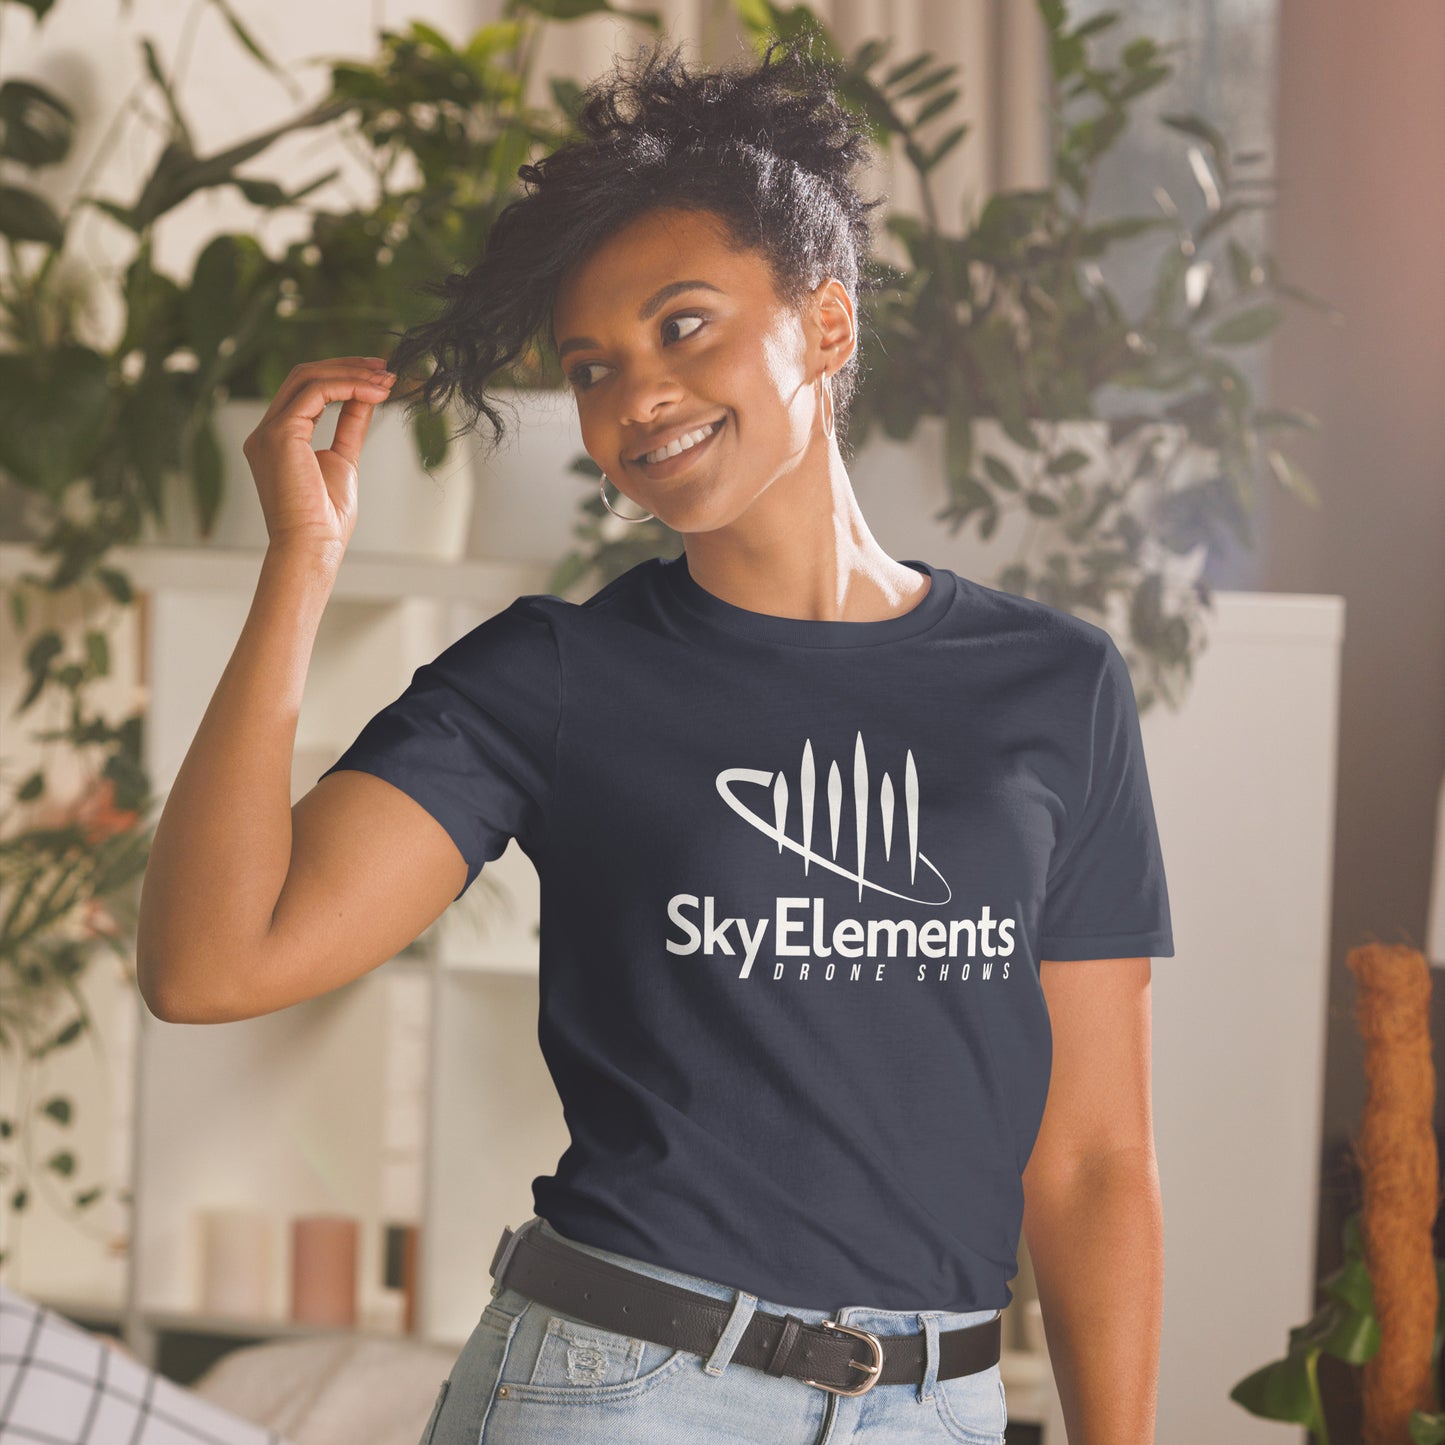 Short-Sleeve Unisex T-Shirt with Sky Elements Logo